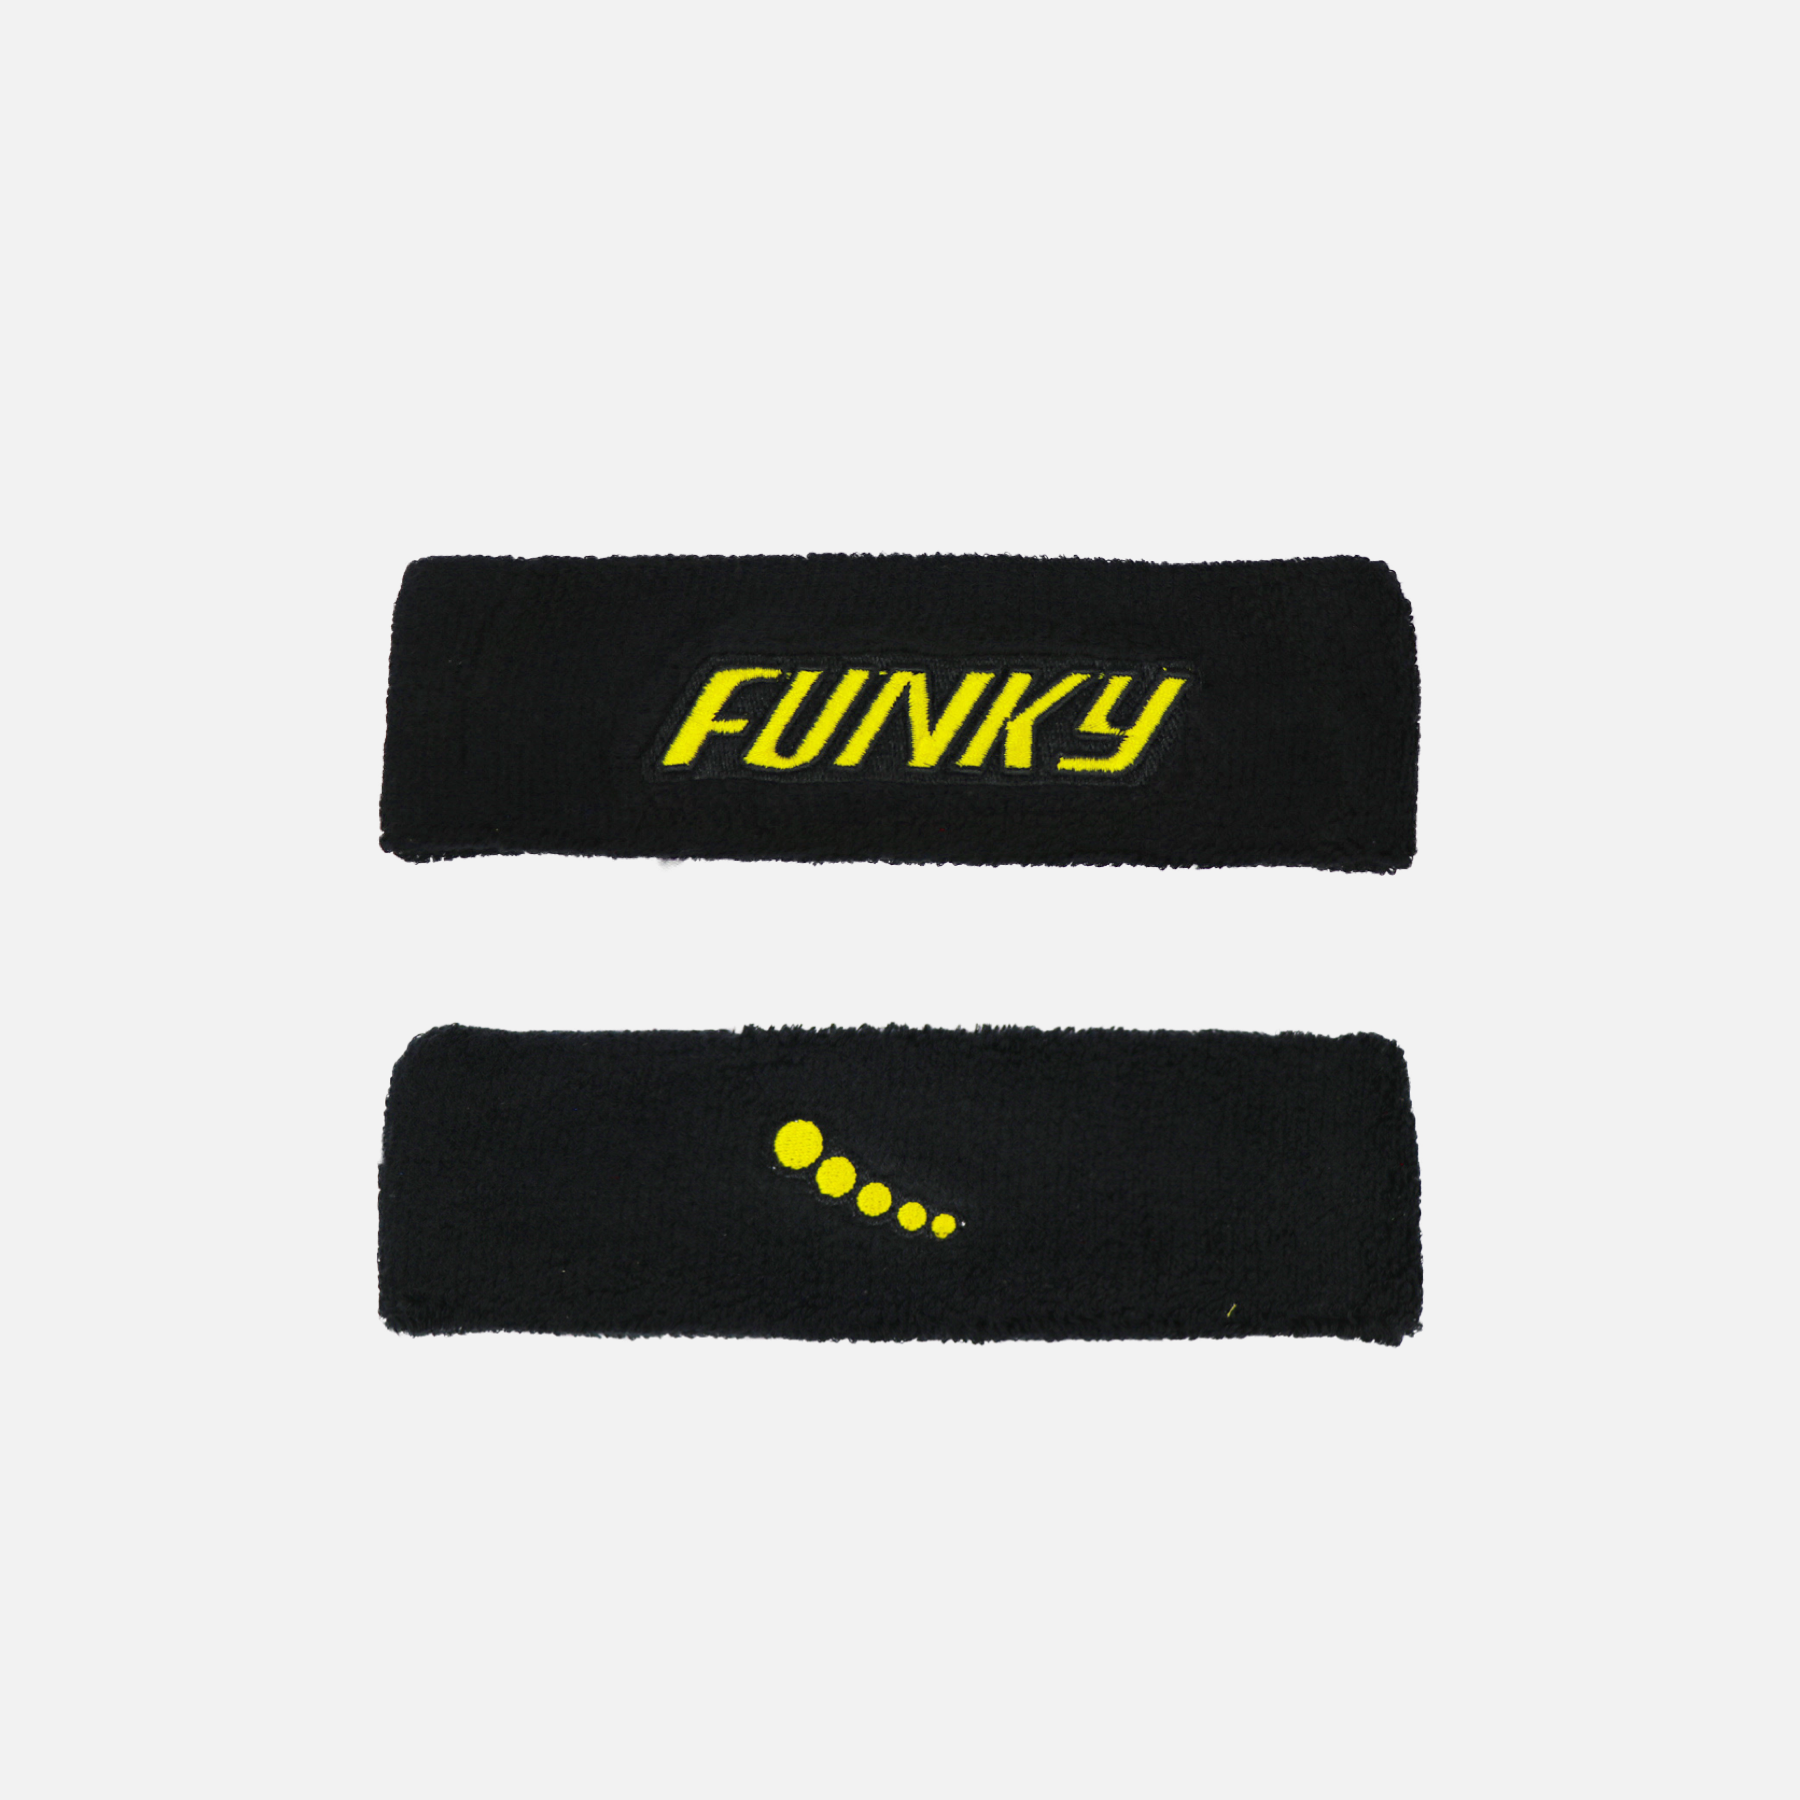 Funky sports Headband - Funky Flickr Boyz wrestling Gear